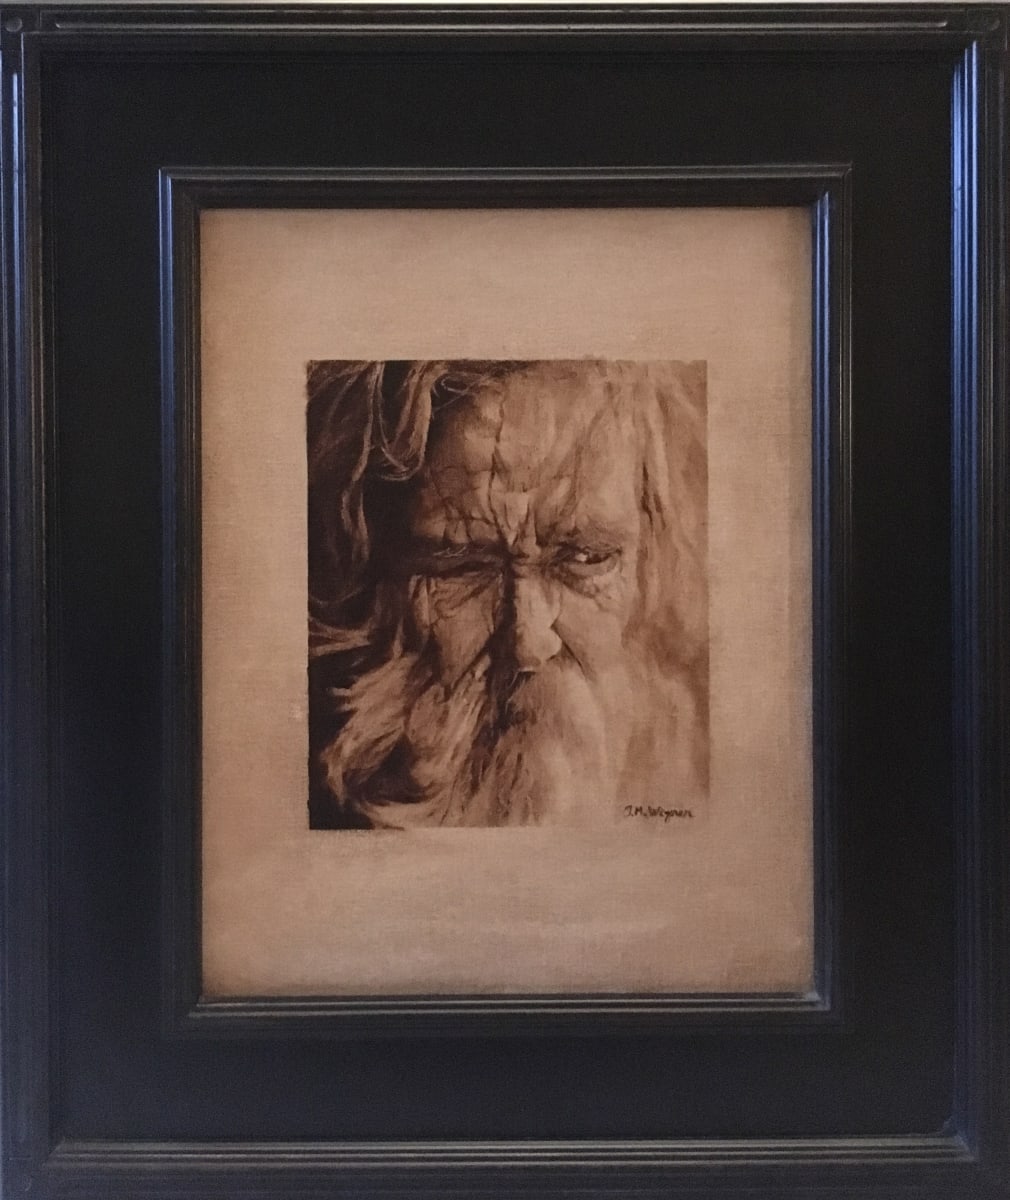 Old Man Portrait Study In Raw Umber by John Wegner  Image: oil on linen panel, 11 x 14"